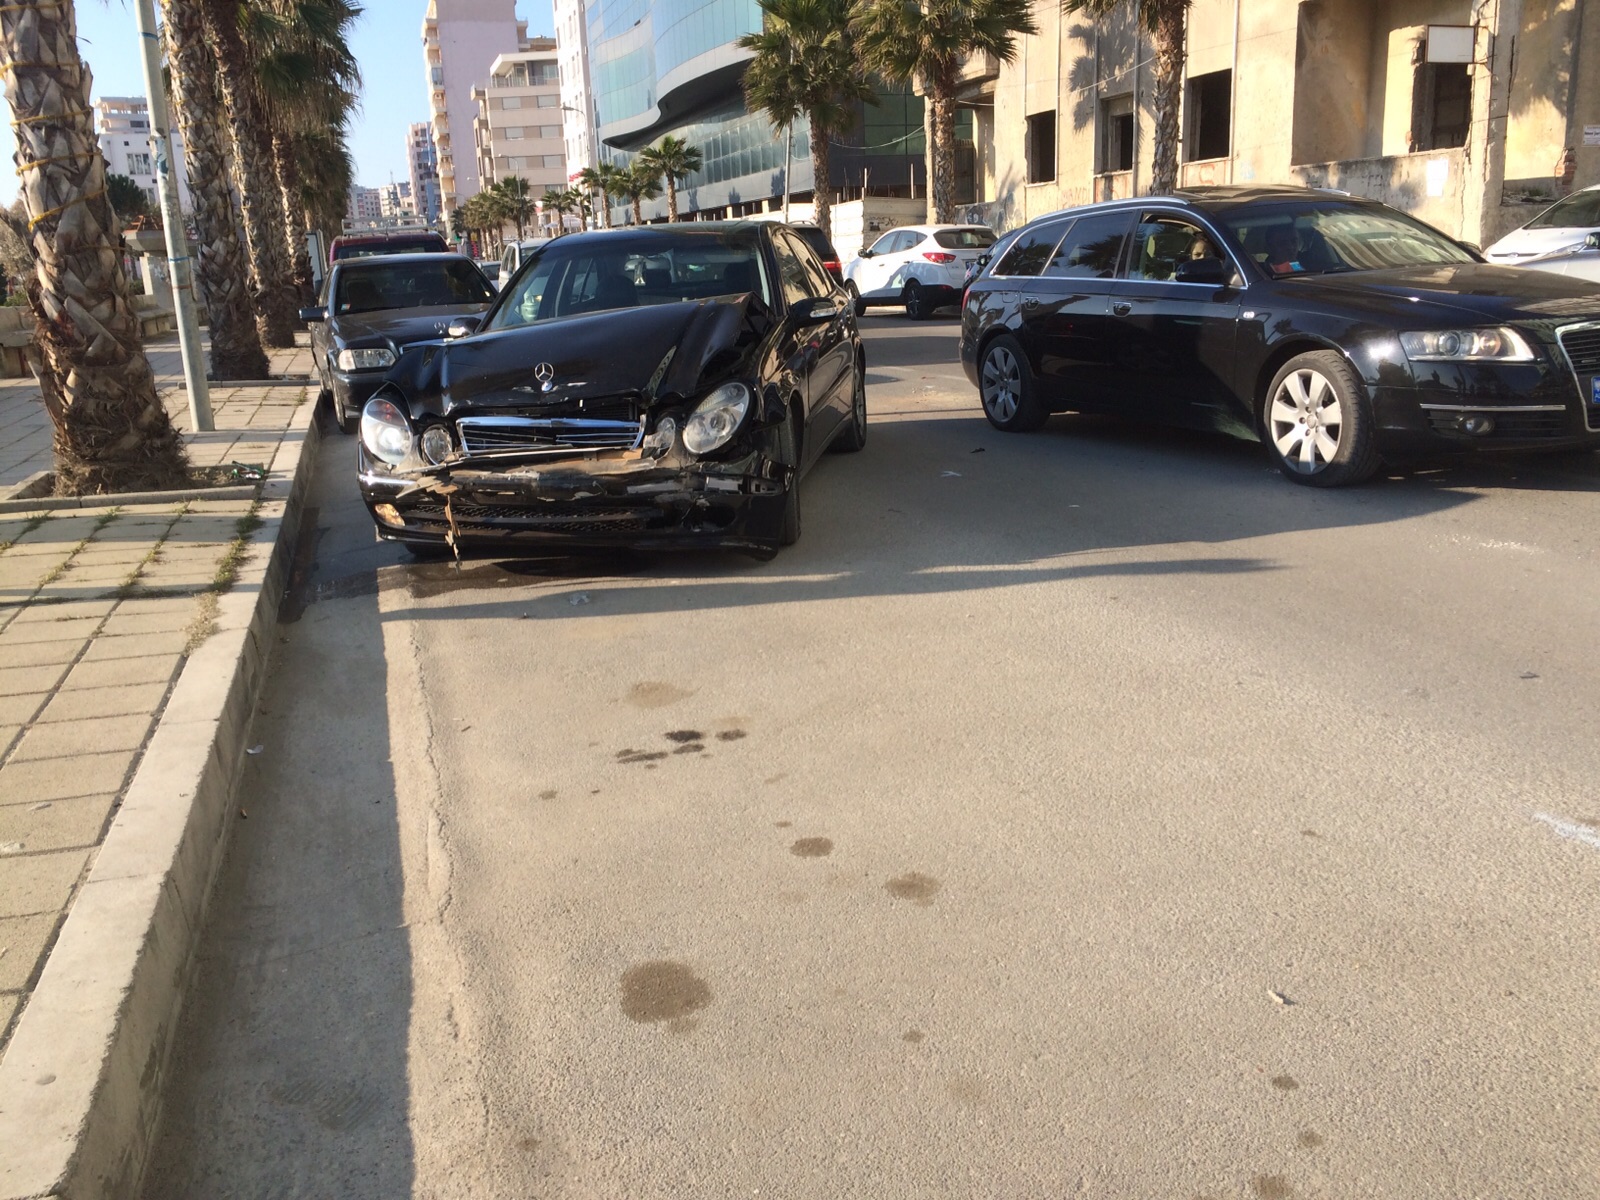 Garë me makina në shëtitoren e Durrësit, përplasen tri automjete në radhë